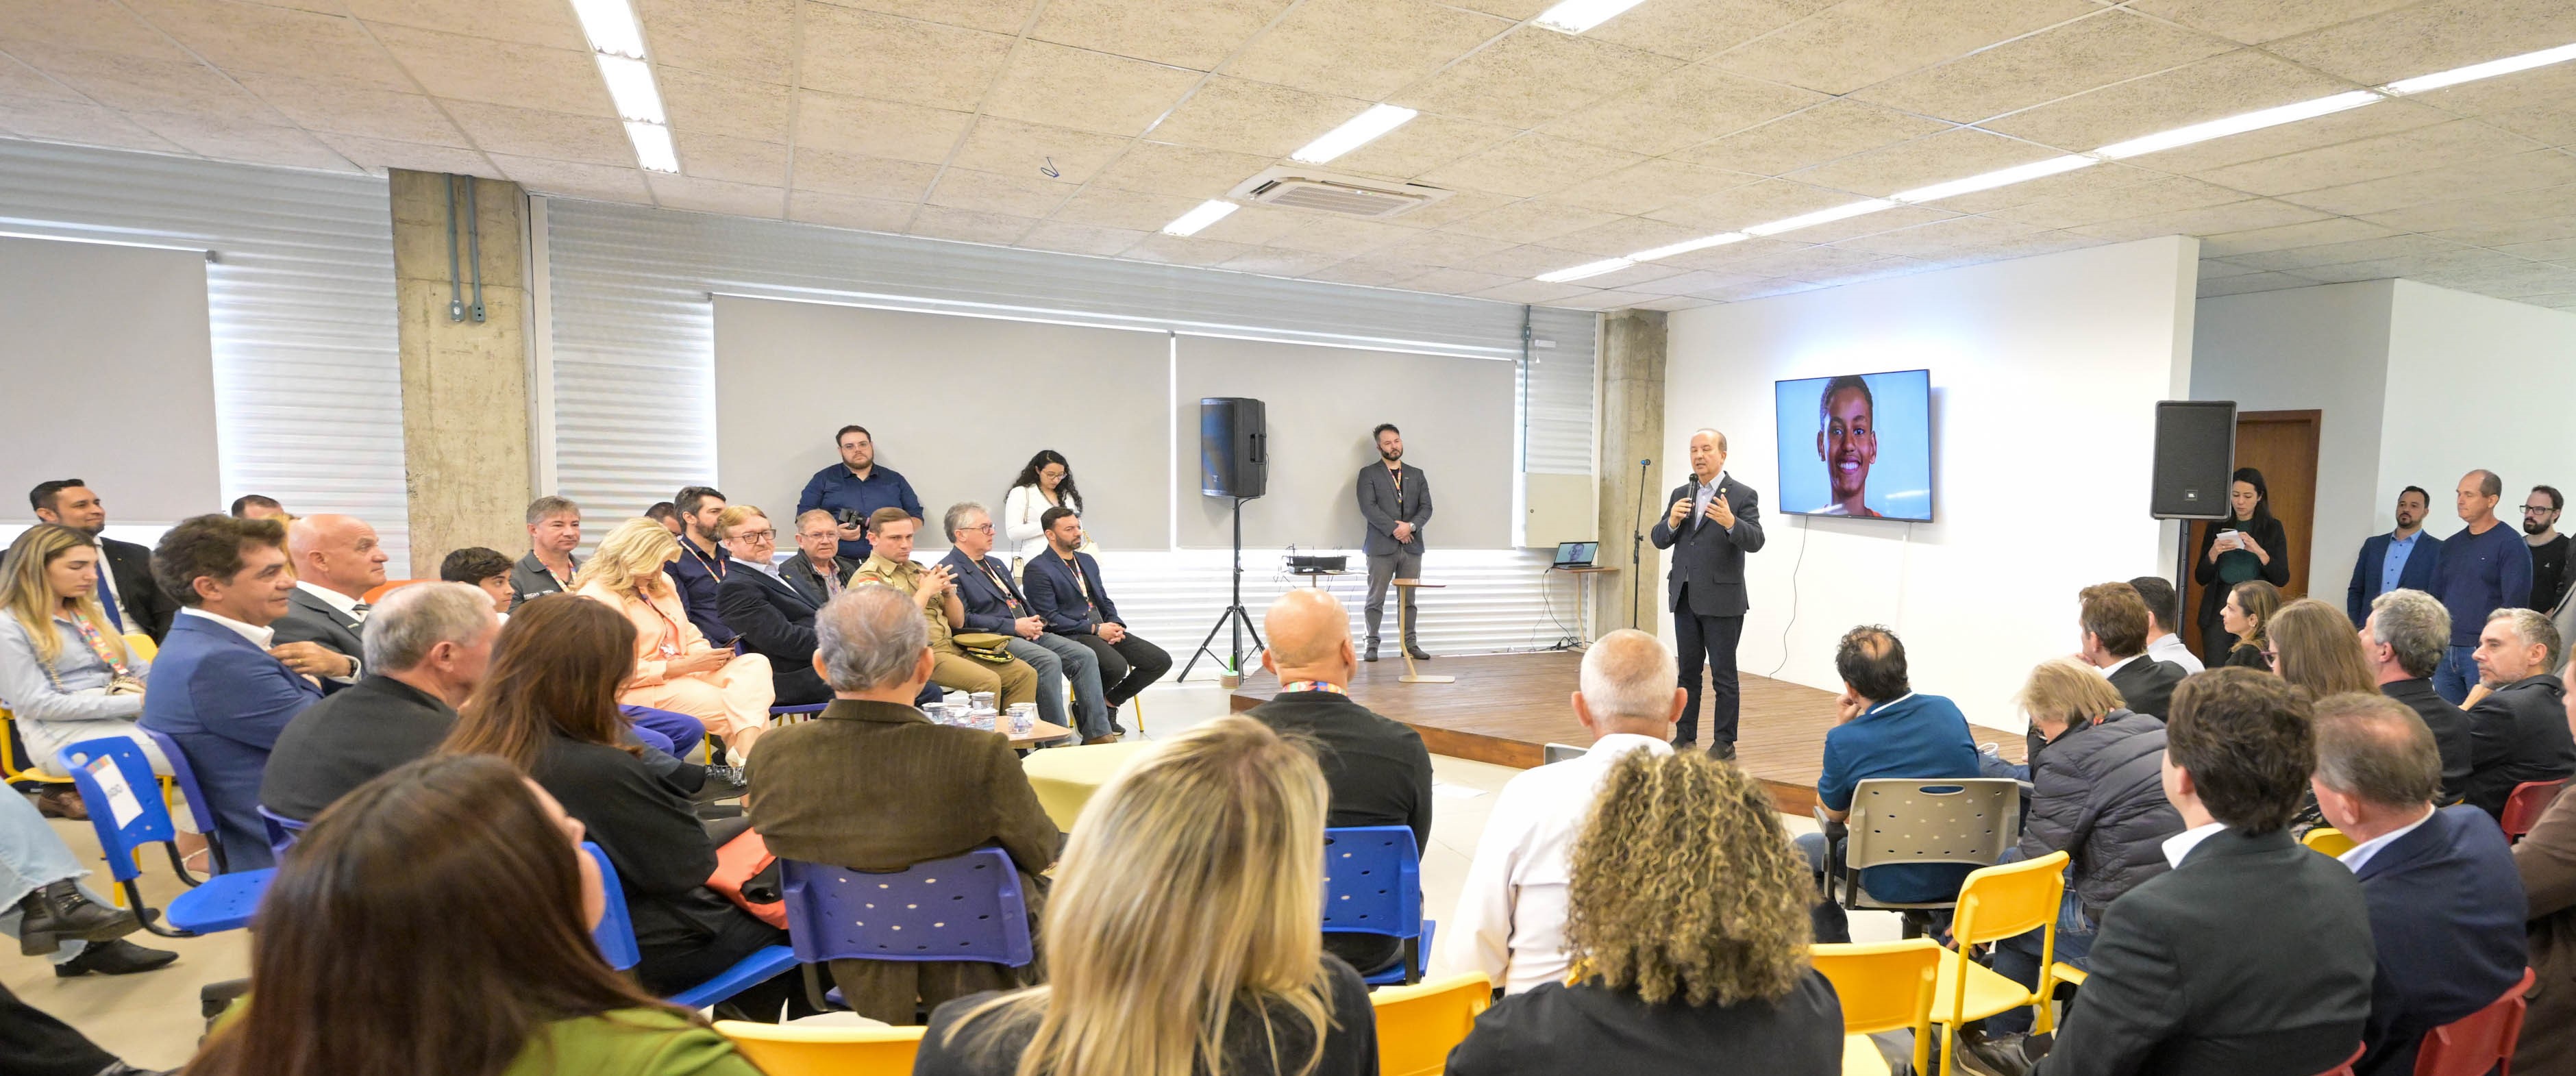 Em Criciúma, governador inaugura Centro Lúdico de Inovação e Criatividade do Bairro da Juventude